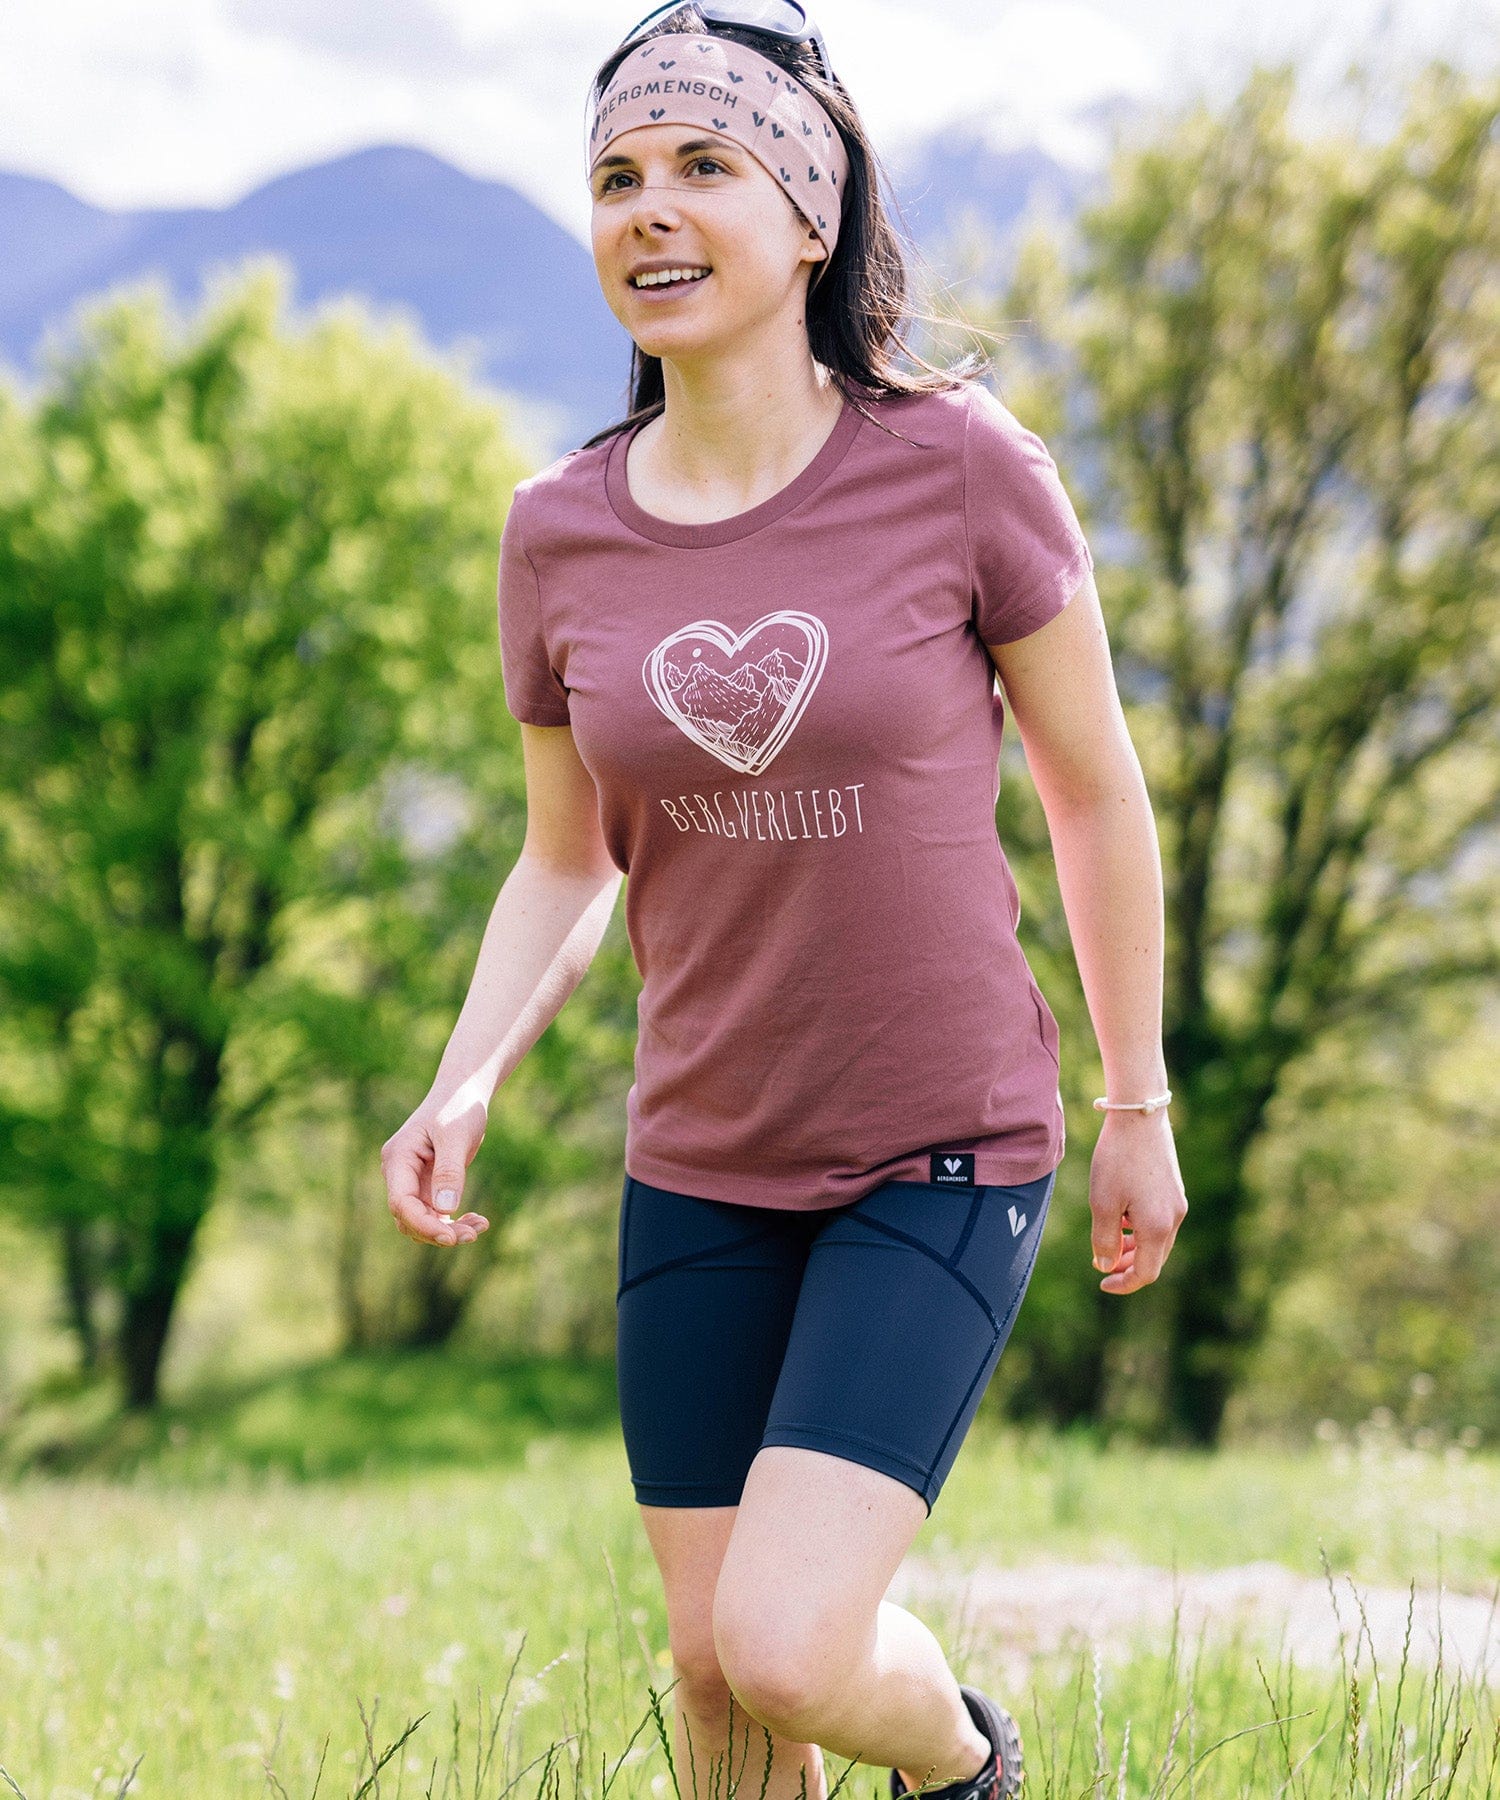 Bergverliebt - Damen Premium Organic Shirt von Bergmensch